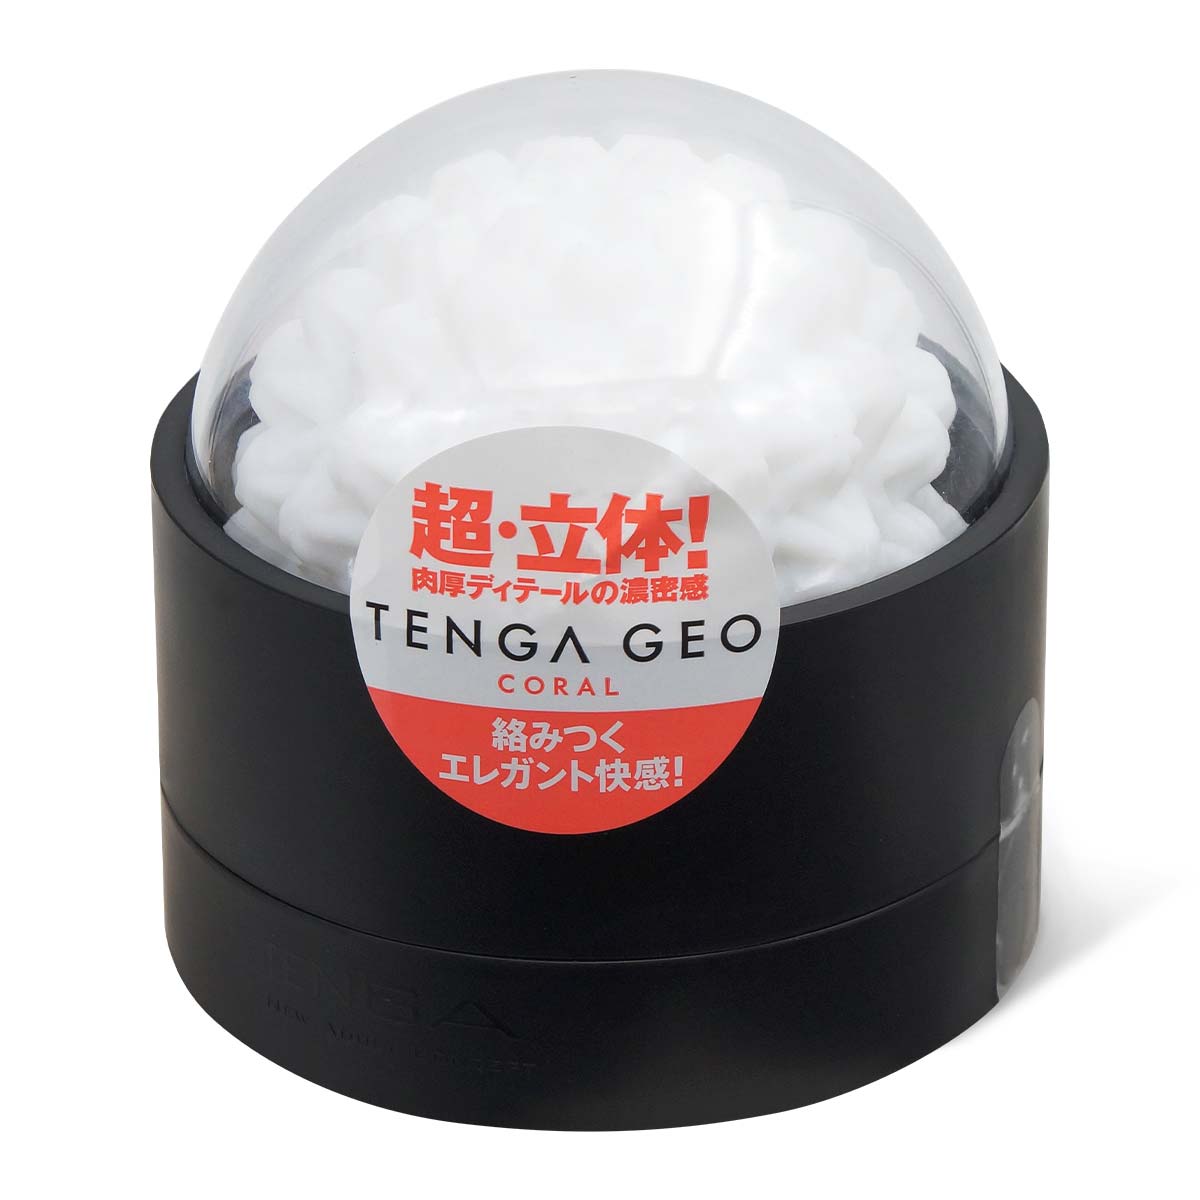 TENGA GEO 珊瑚球-thumb_1